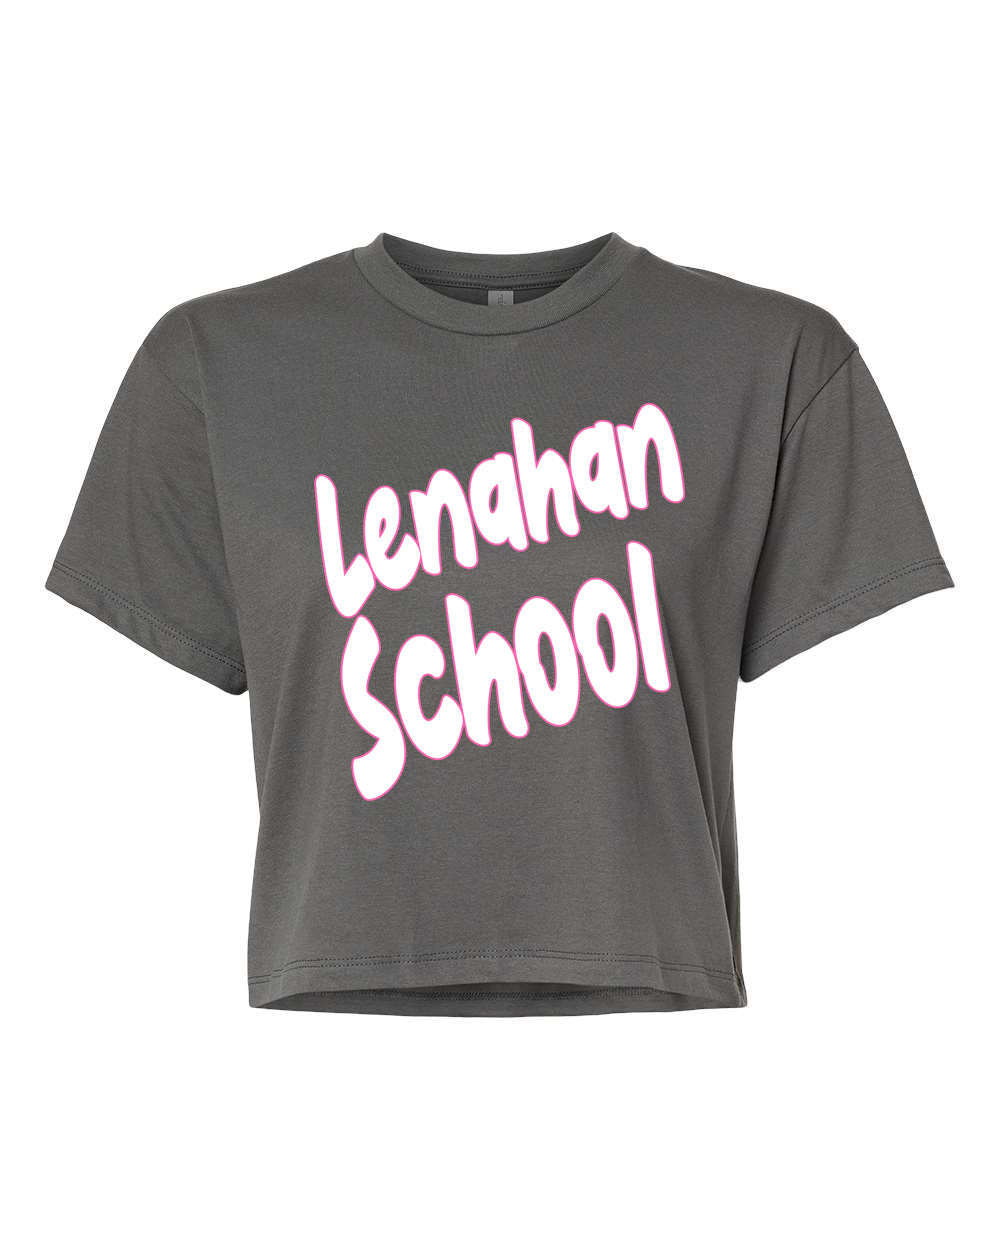 Lenahan Dance design 5 Crop Top